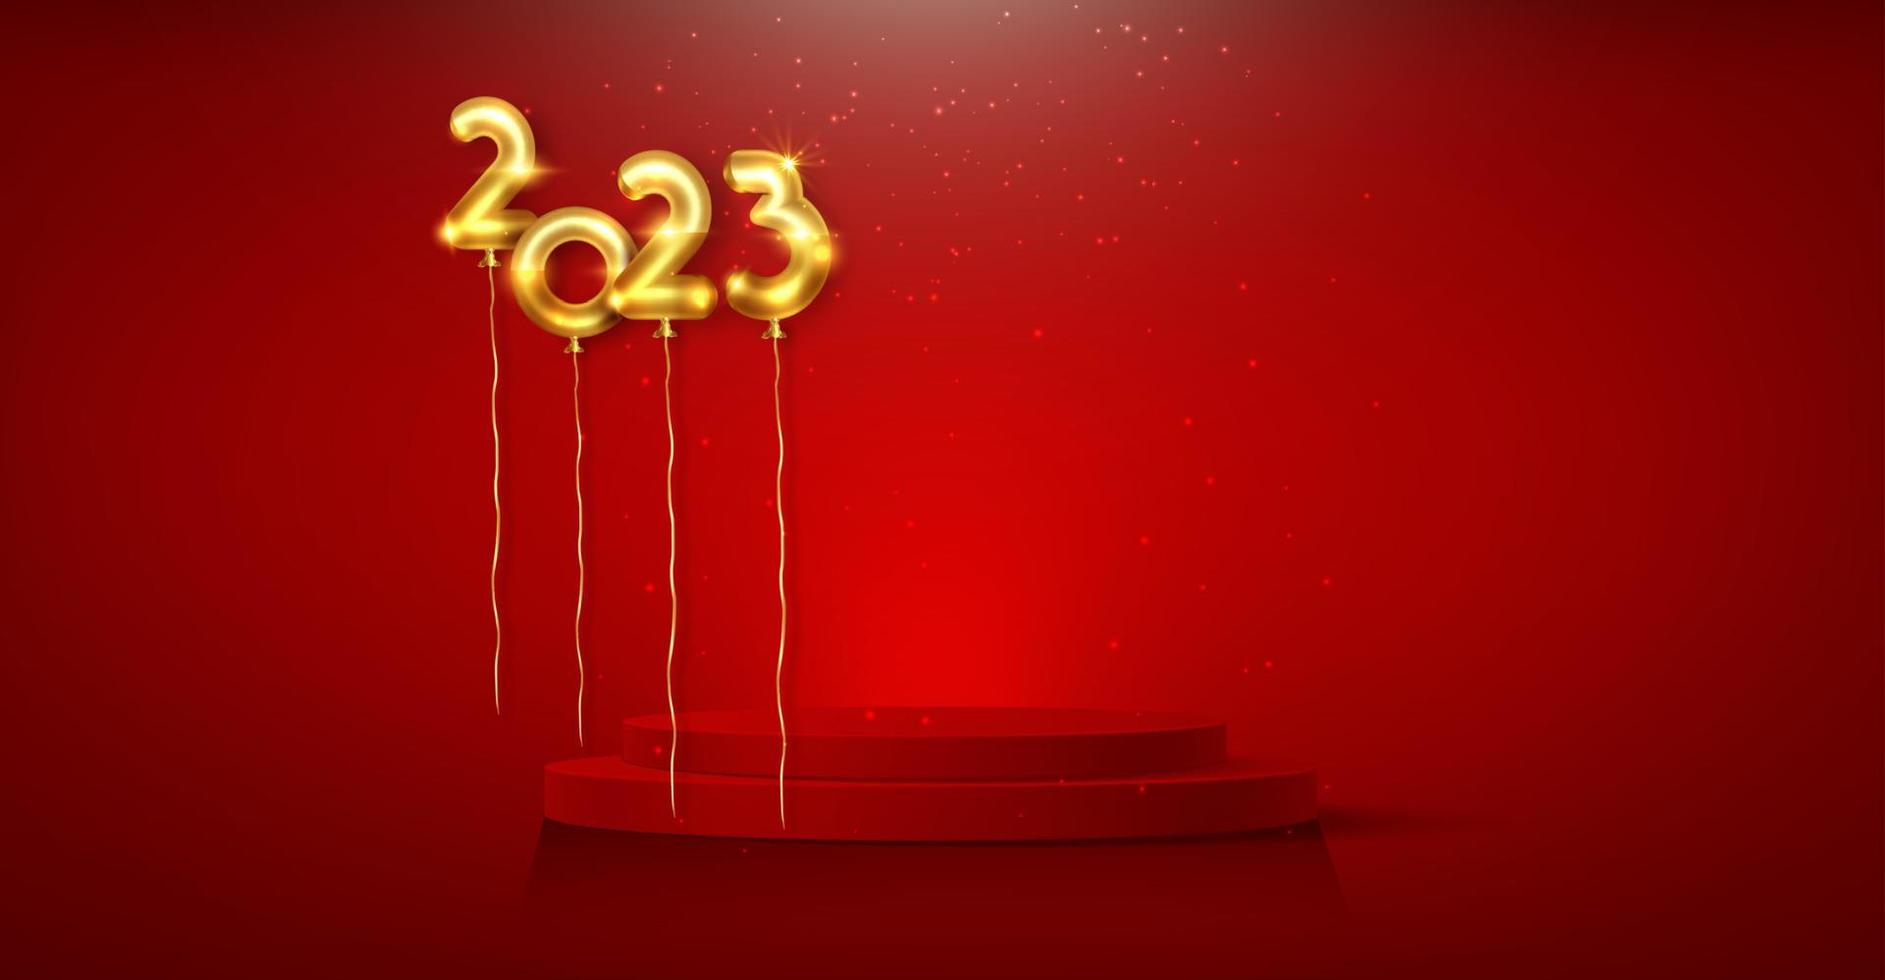 Balón de oro 3d 2023 con cartel de podio, fiesta de año nuevo, números de lámina de oro, forma cilíndrica de exhibición de productos, plataforma festiva para las fiestas. plantilla de lujo vectorial aislada sobre fondo rojo vector